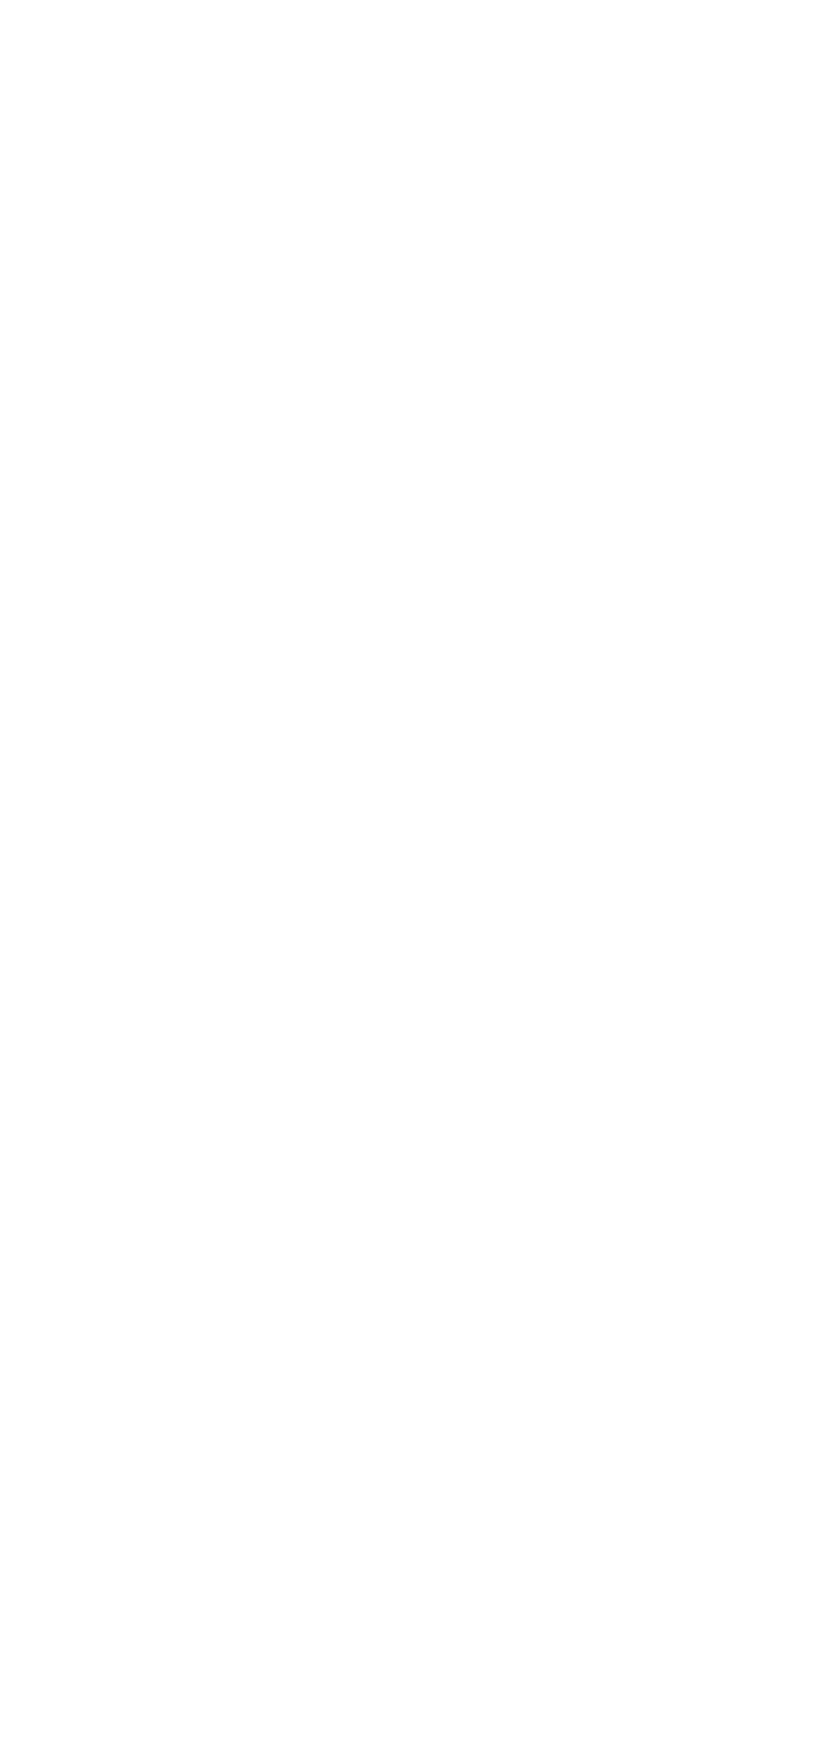 chiisanaoyashiki logo negative